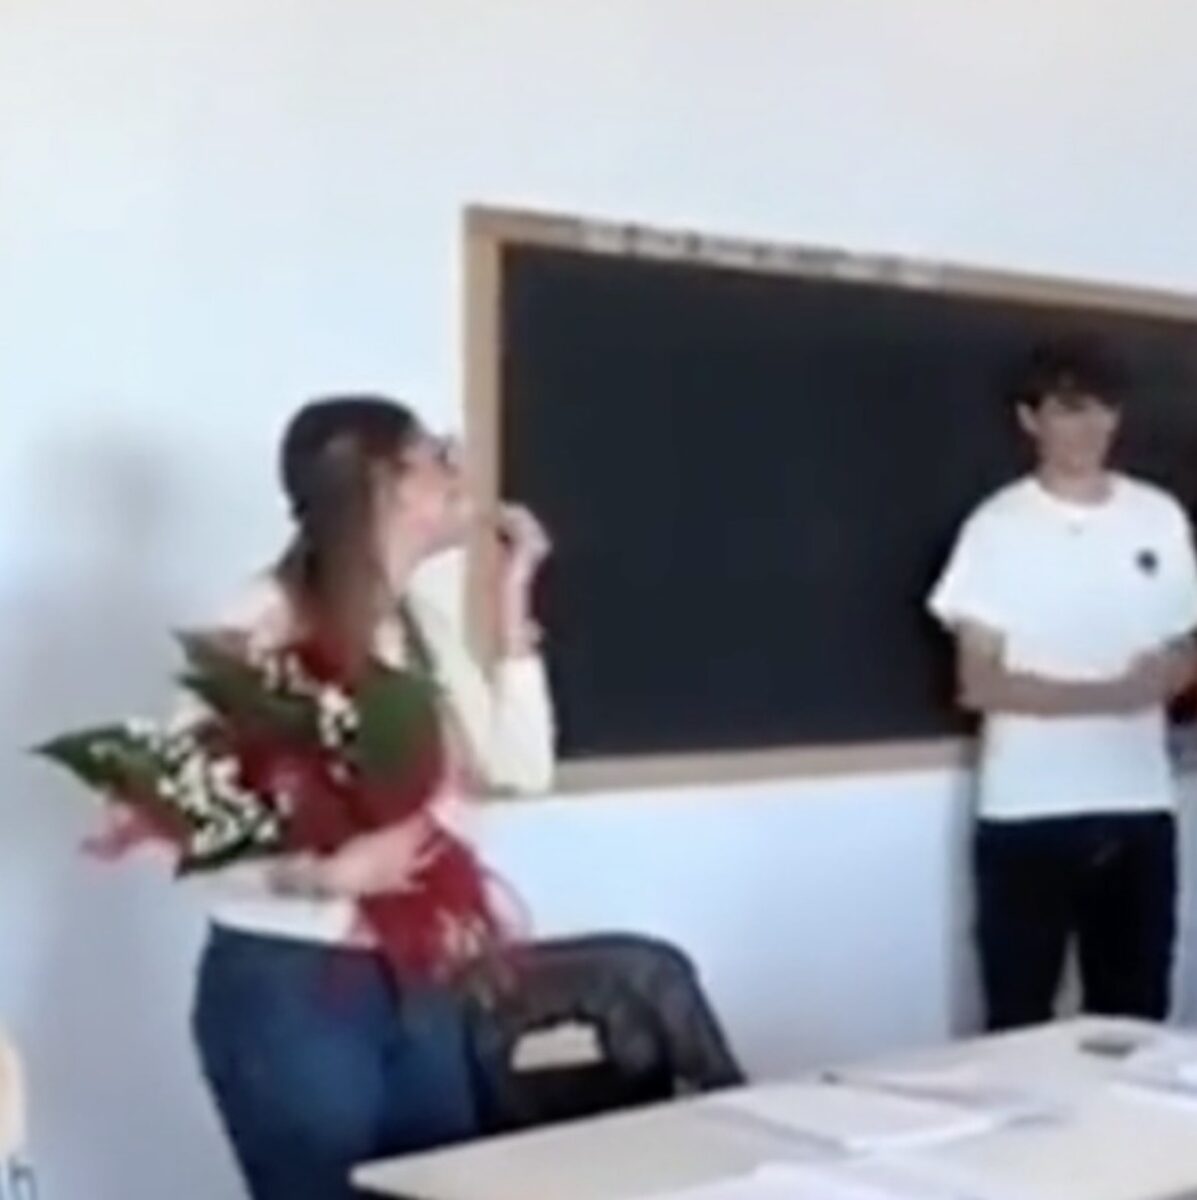 La proposta di matrimonio della prof di fronte alla classe